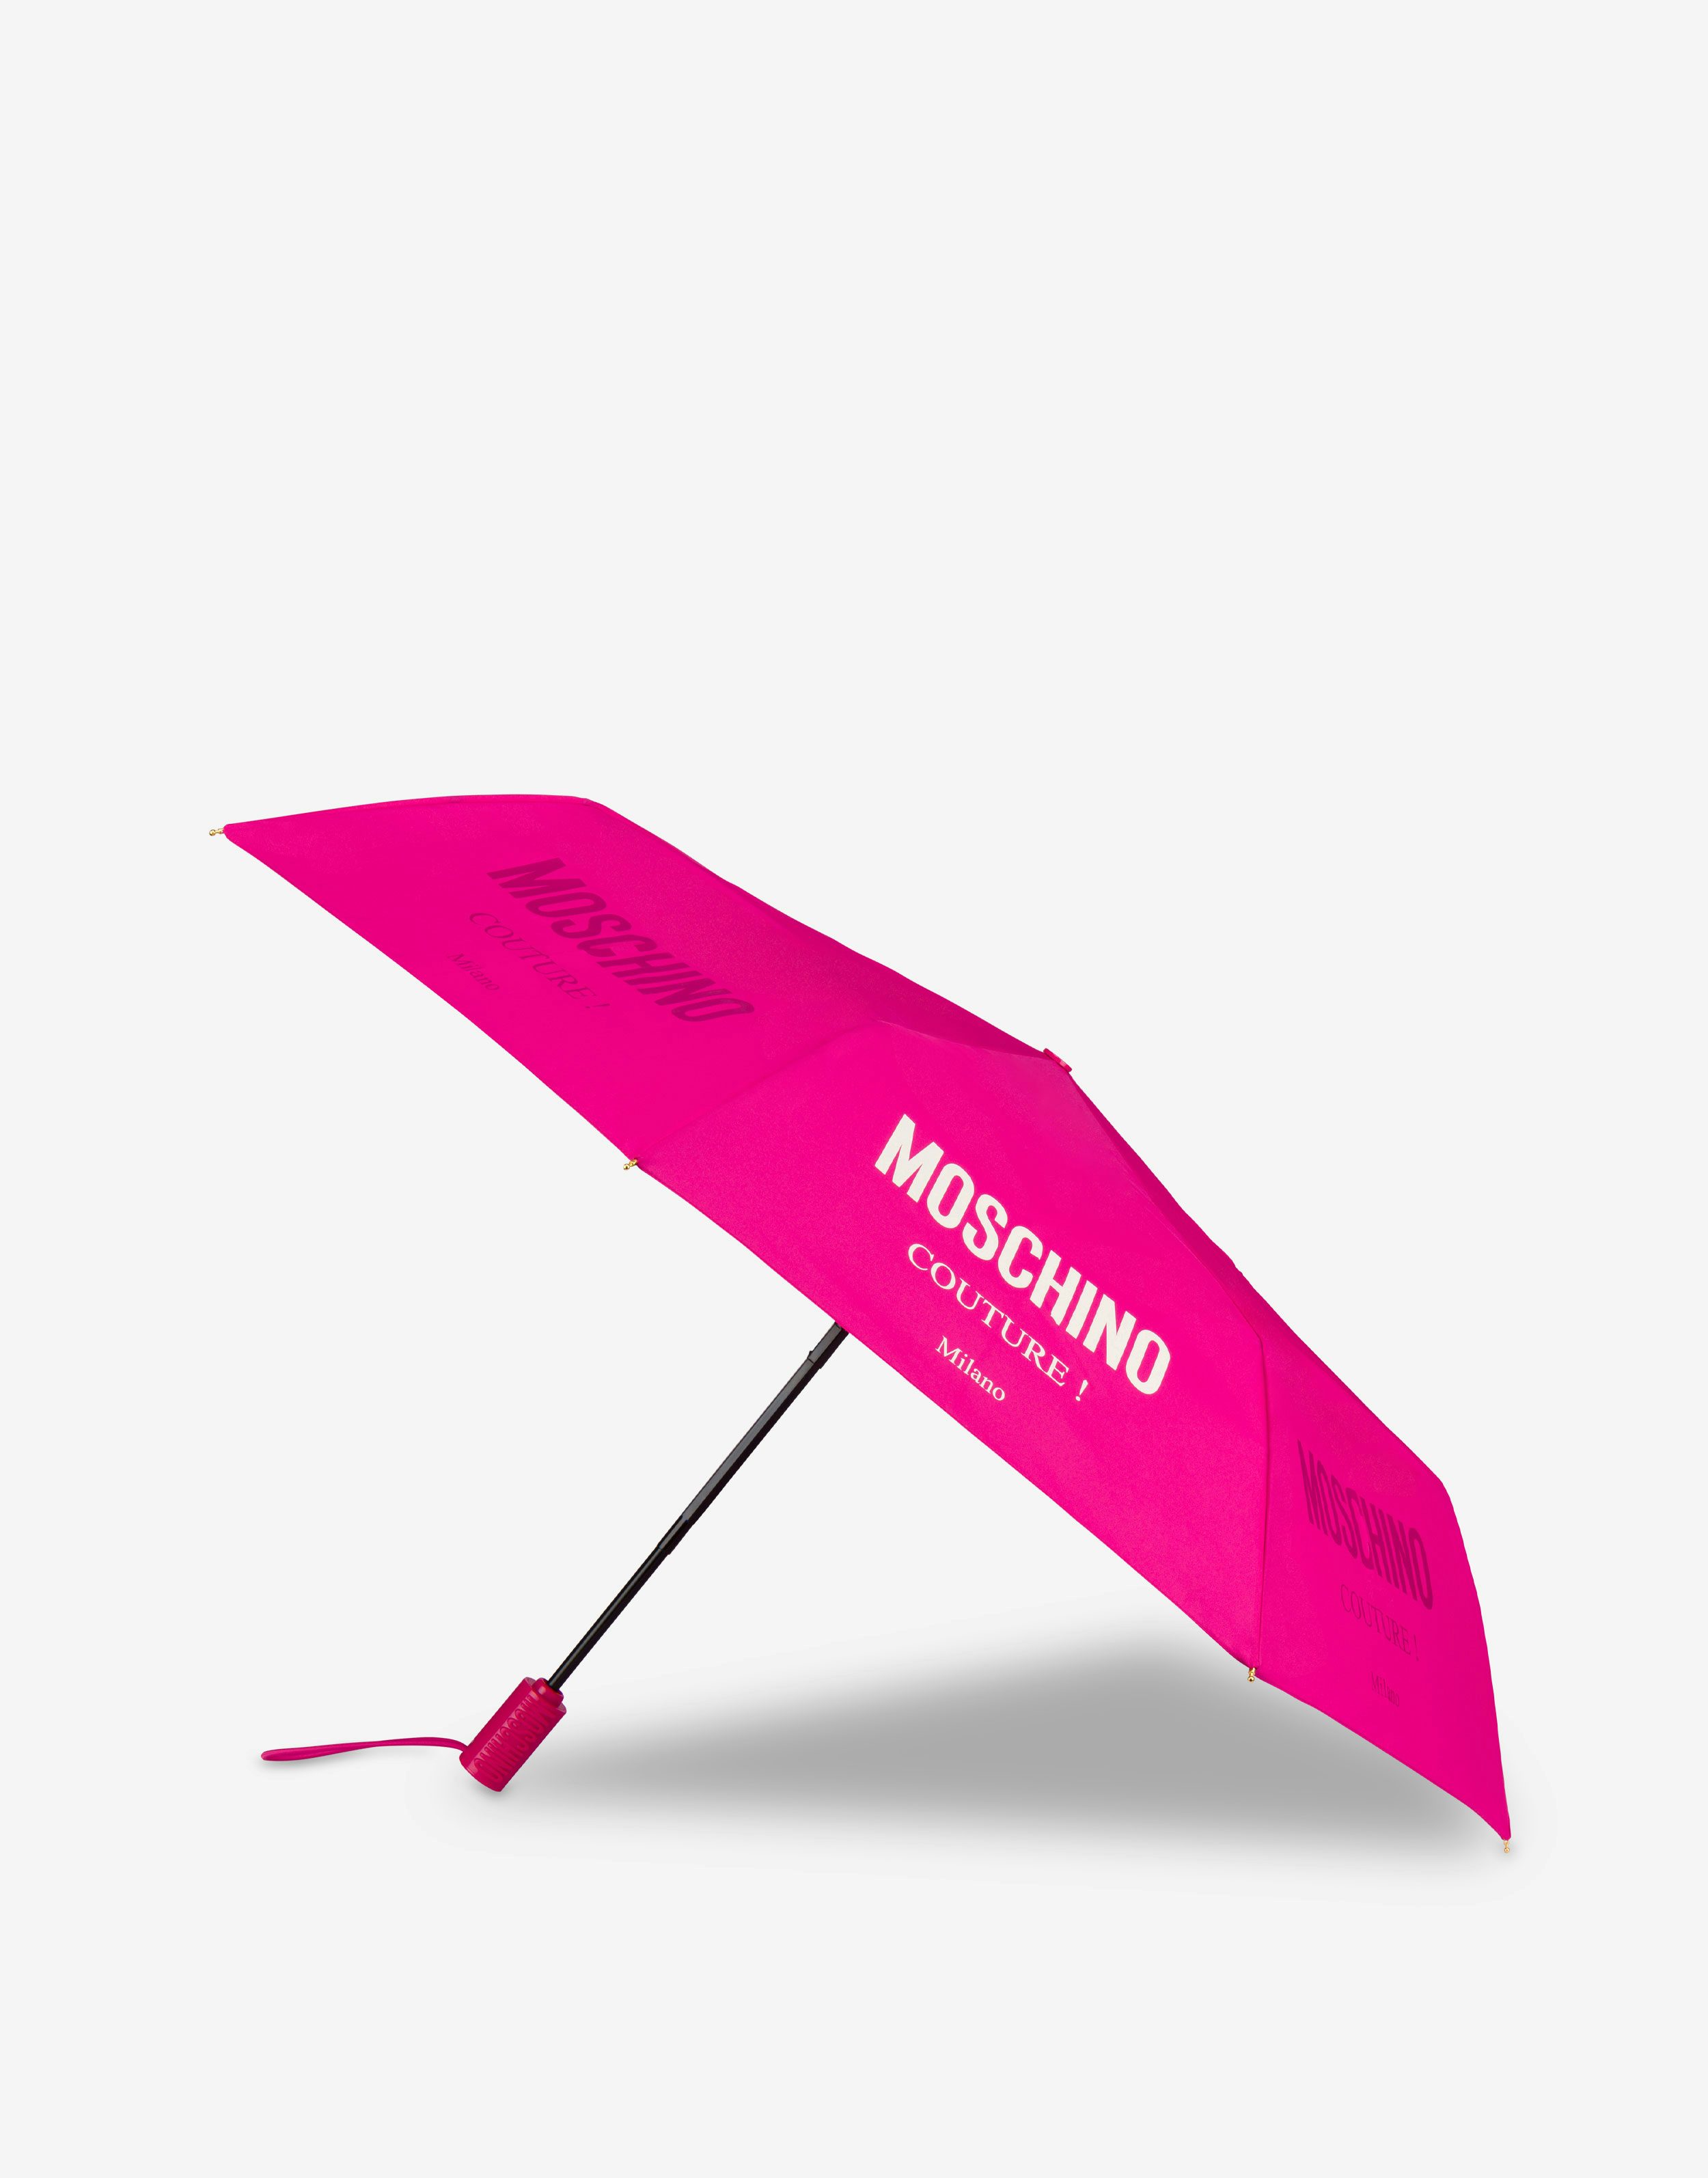 Regenschirm Öffnen/Schließen Moschino Couture 0